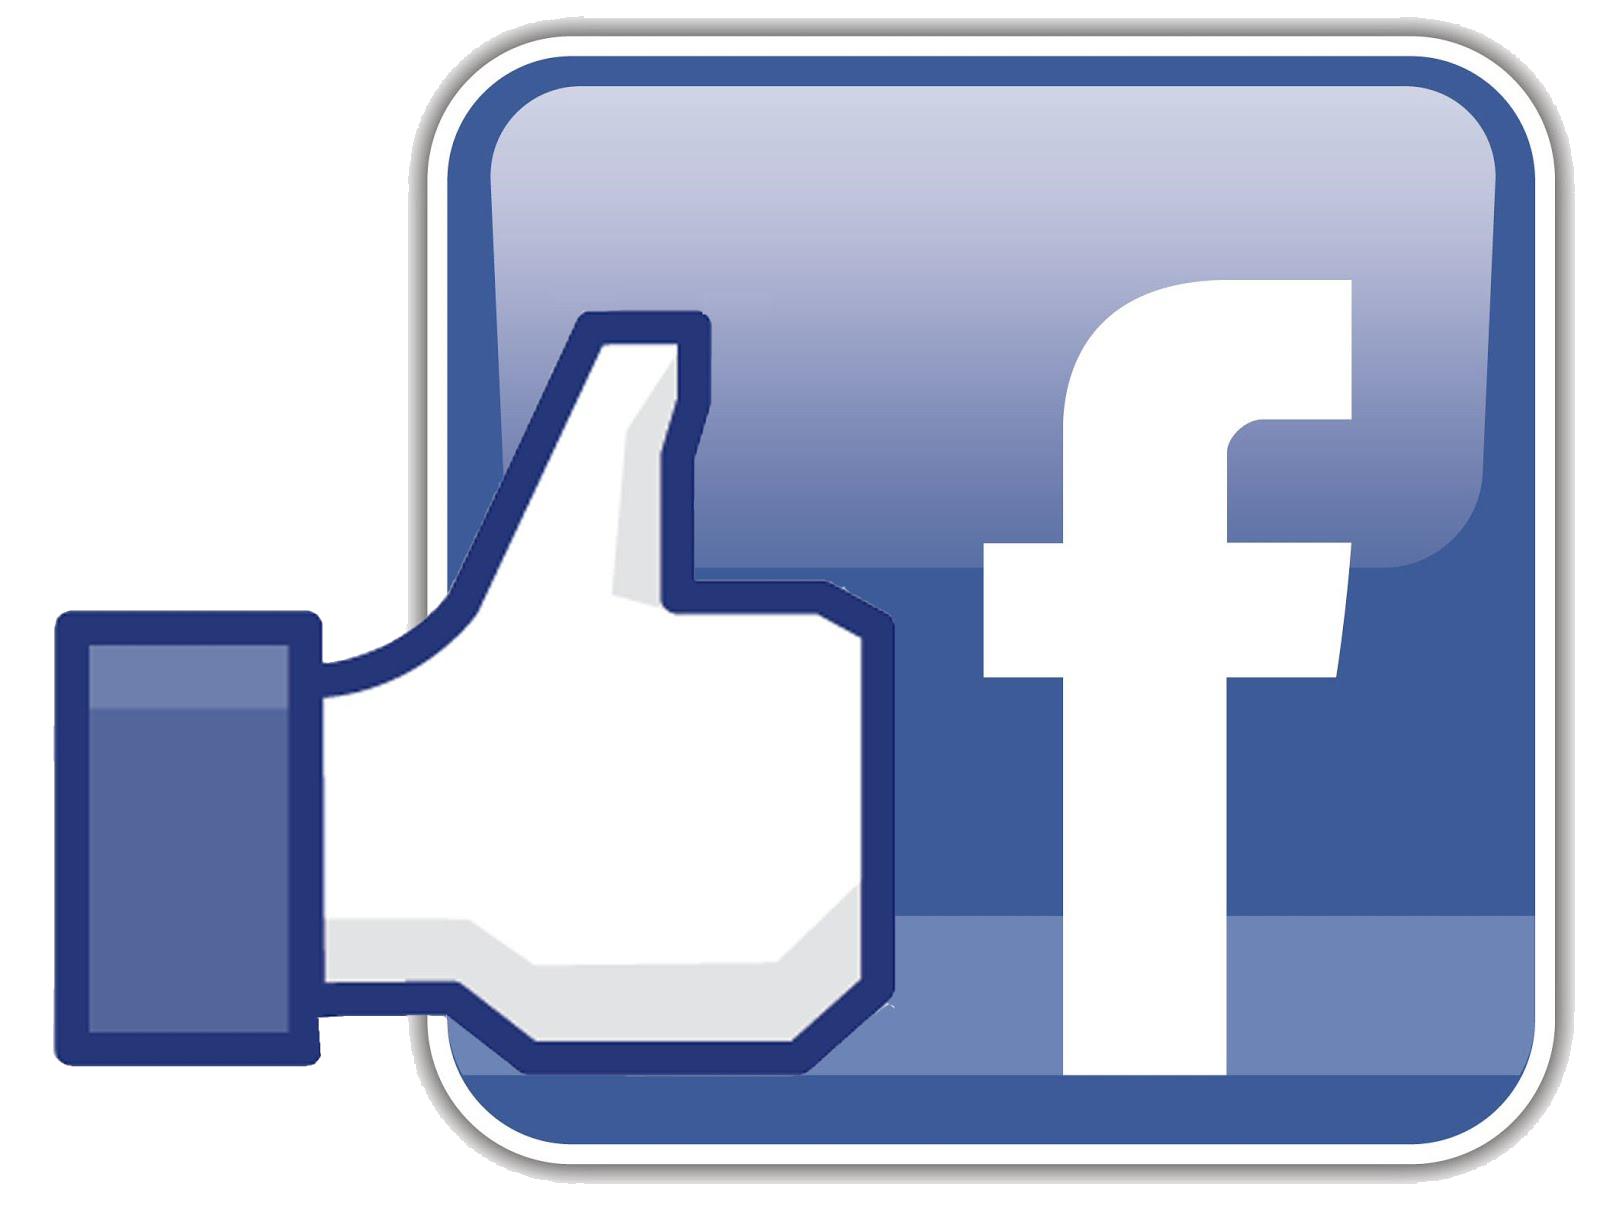 Download Facebook Logo Transparent Background HQ PNG Image | FreePNGImg